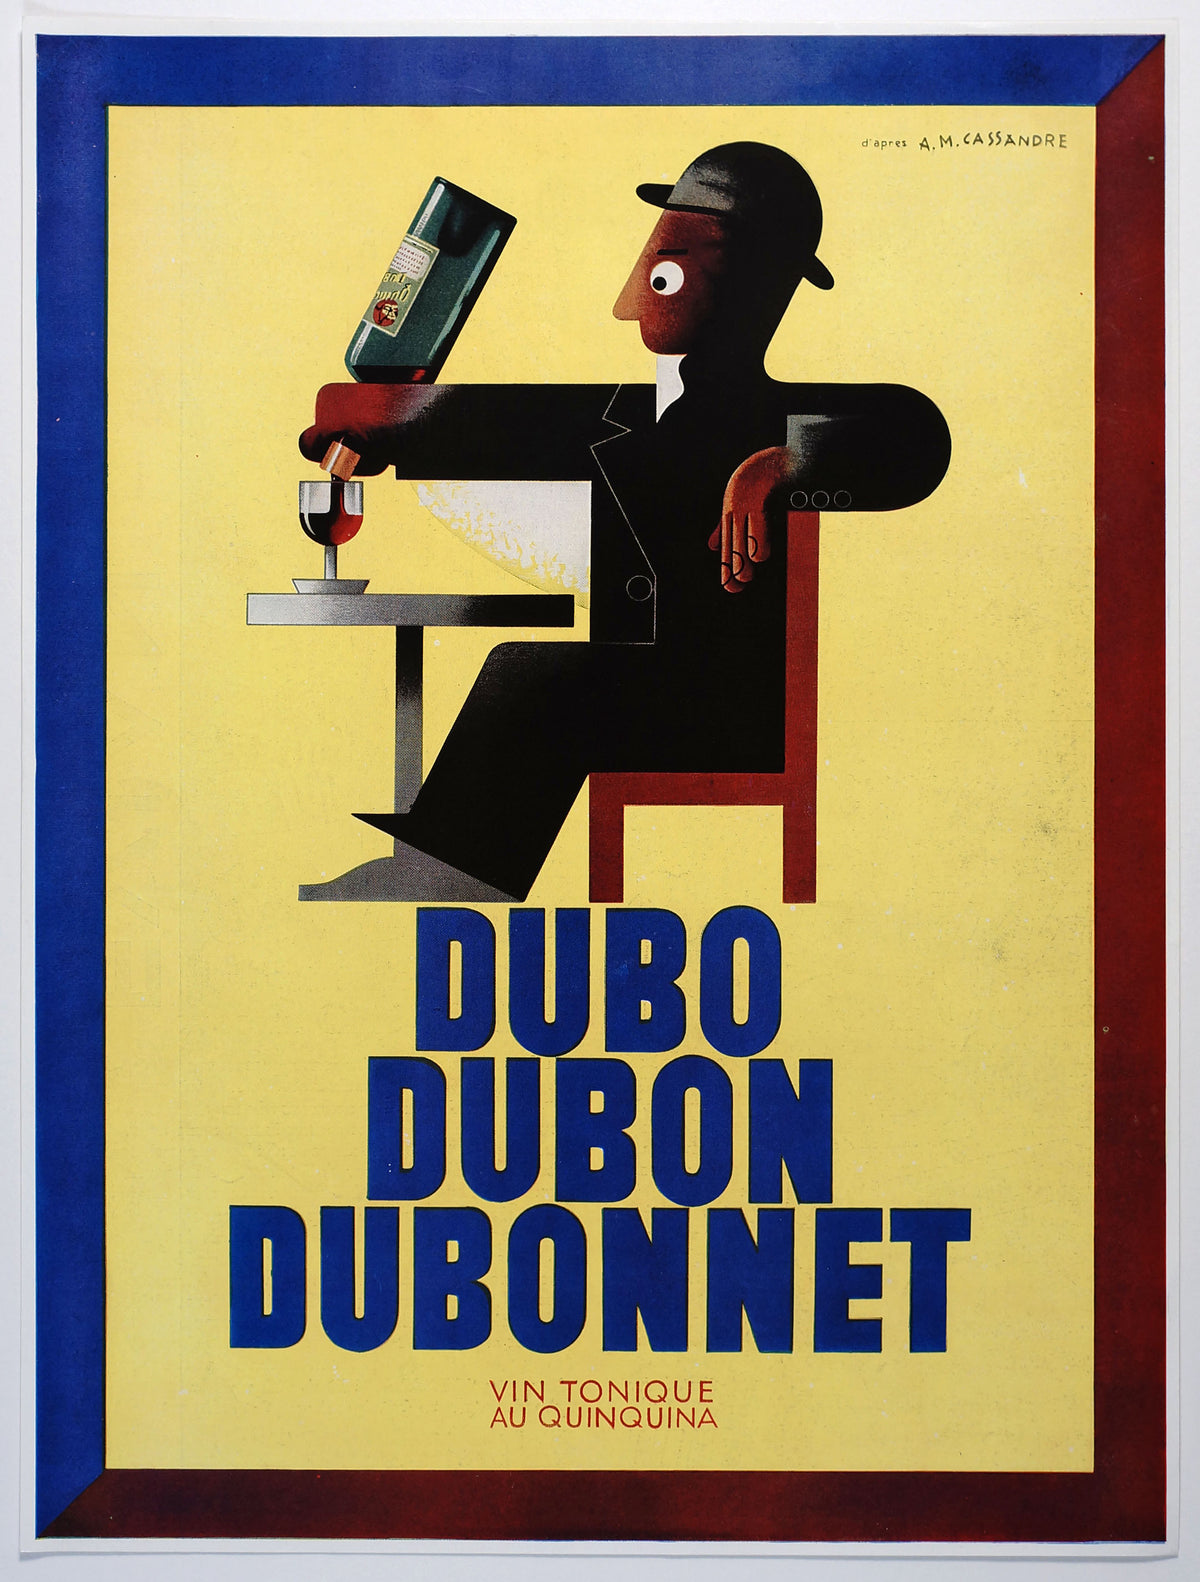 Cassandre - Dubonnet Print Ad - Authentic Vintage Poster